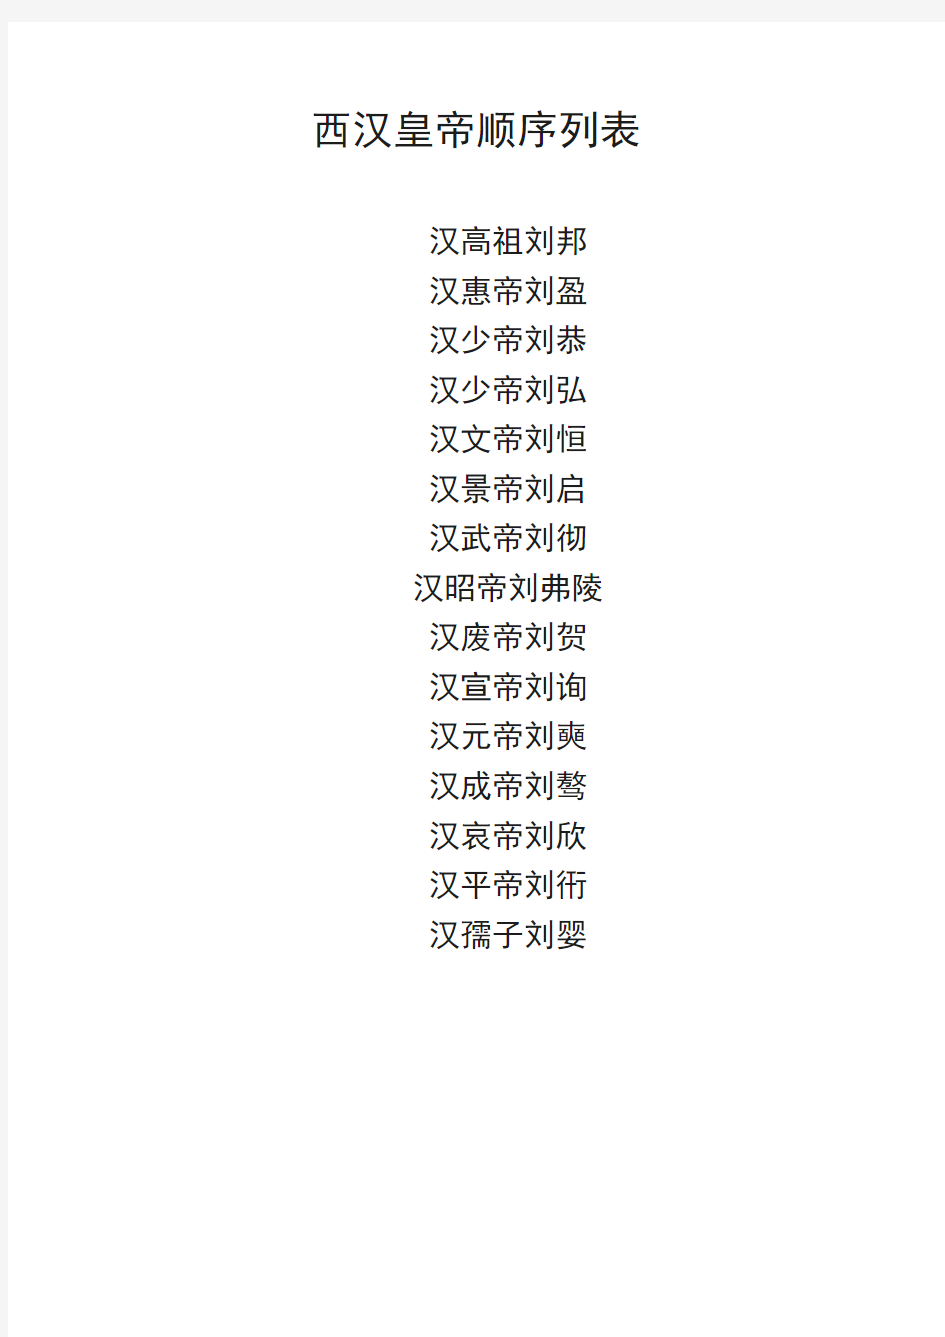 西汉皇帝顺序列表